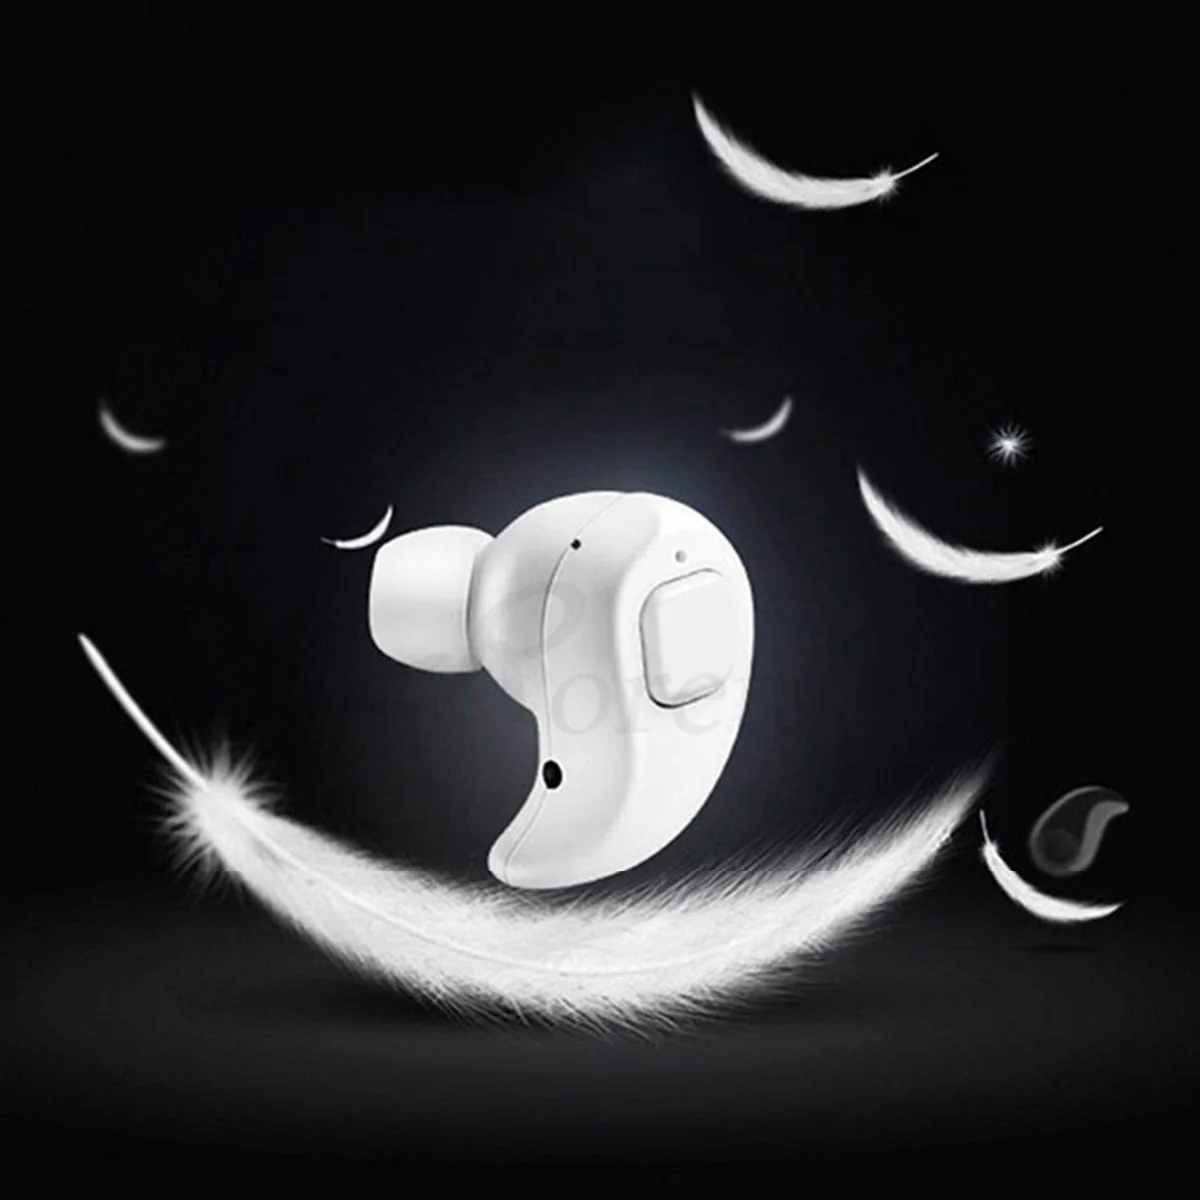 Новые мини беспроводные Bluetooth наушники в ухо Спортивная гарнитура стерео с микрофоном громкой связи Наушники для iPhone Xiaomi Android